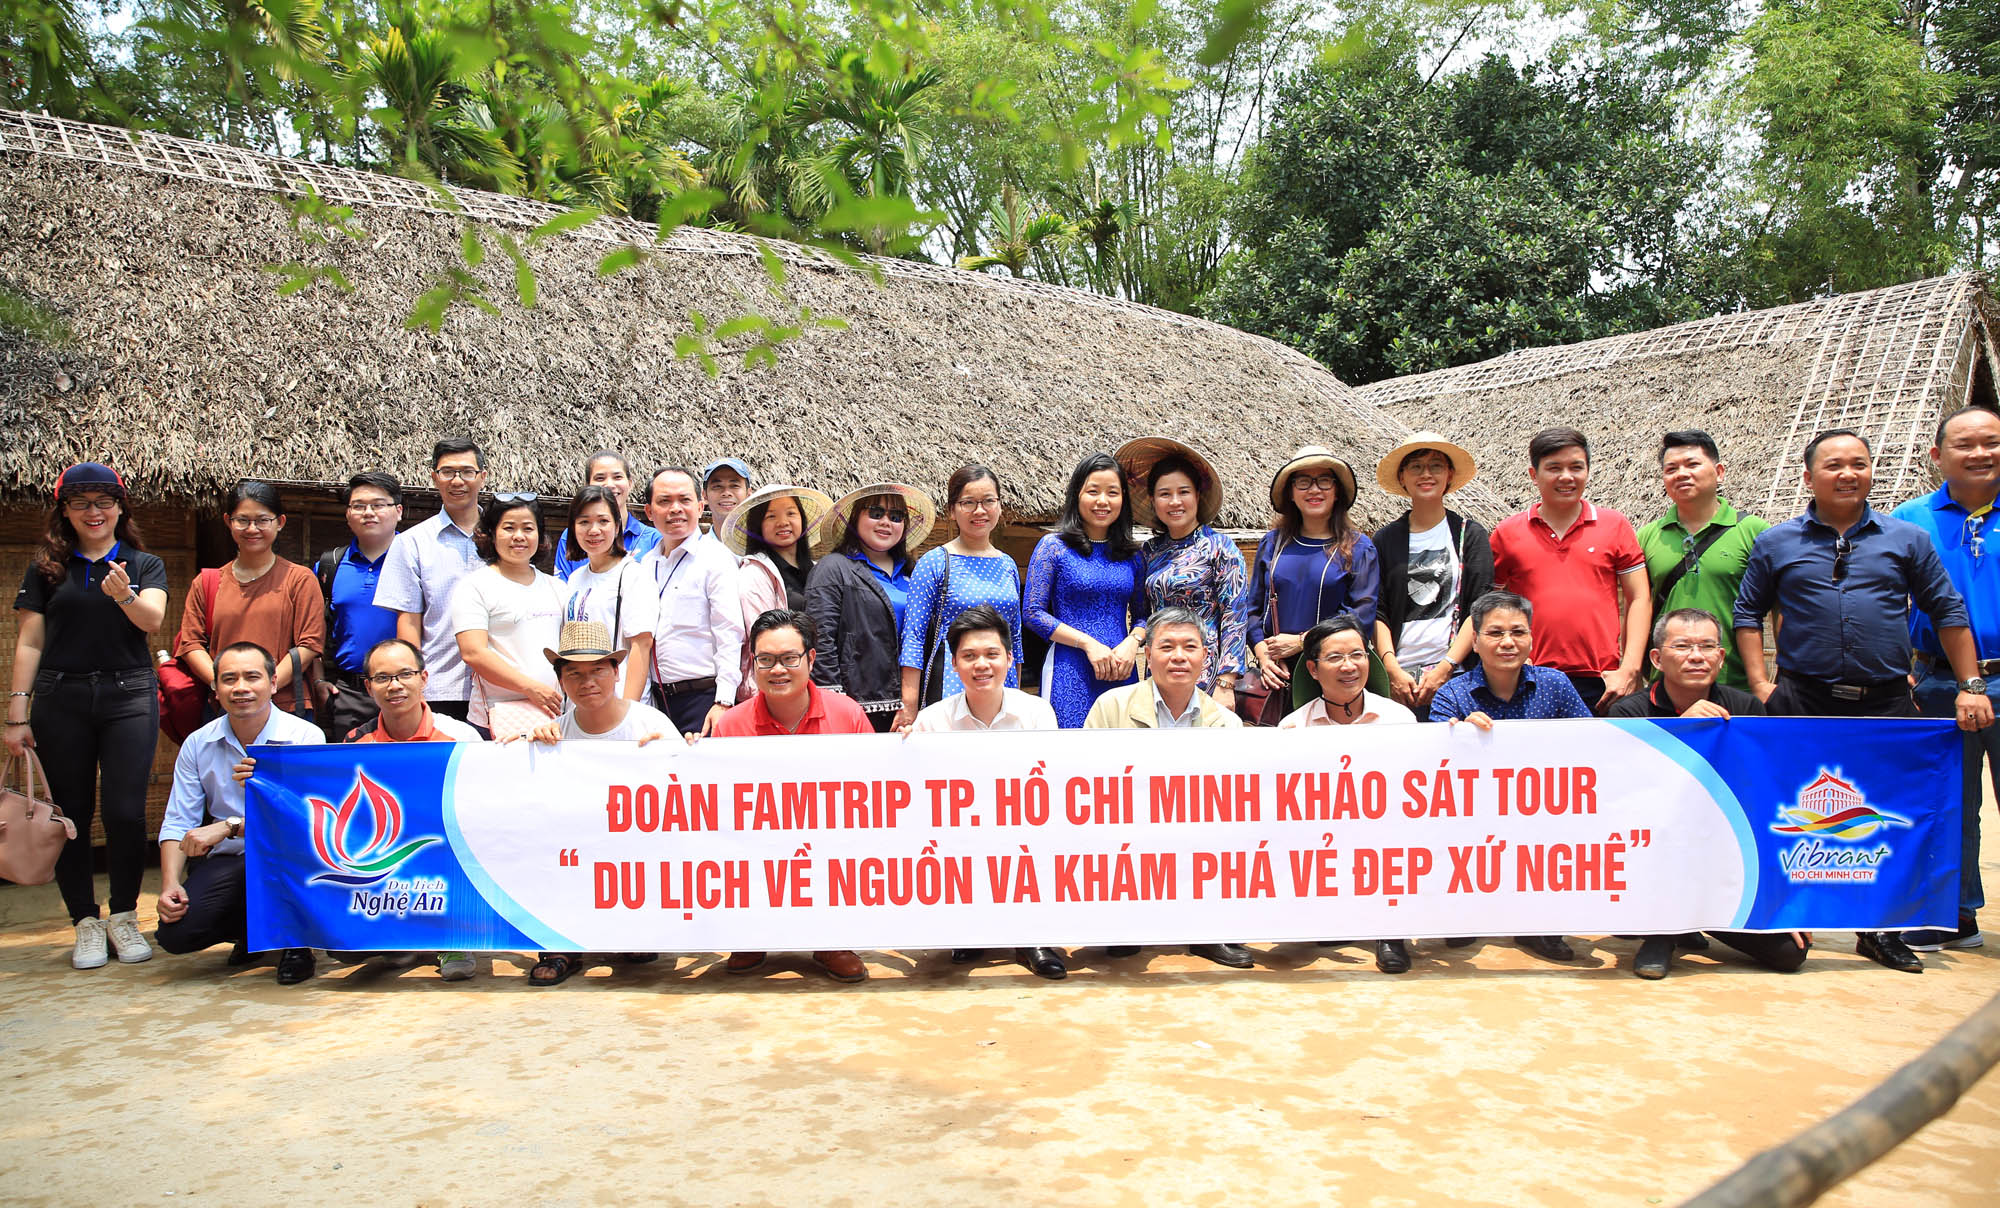 Nghệ An –TP. Hồ Chí Minh phối hợp xây dựng tour du lịch